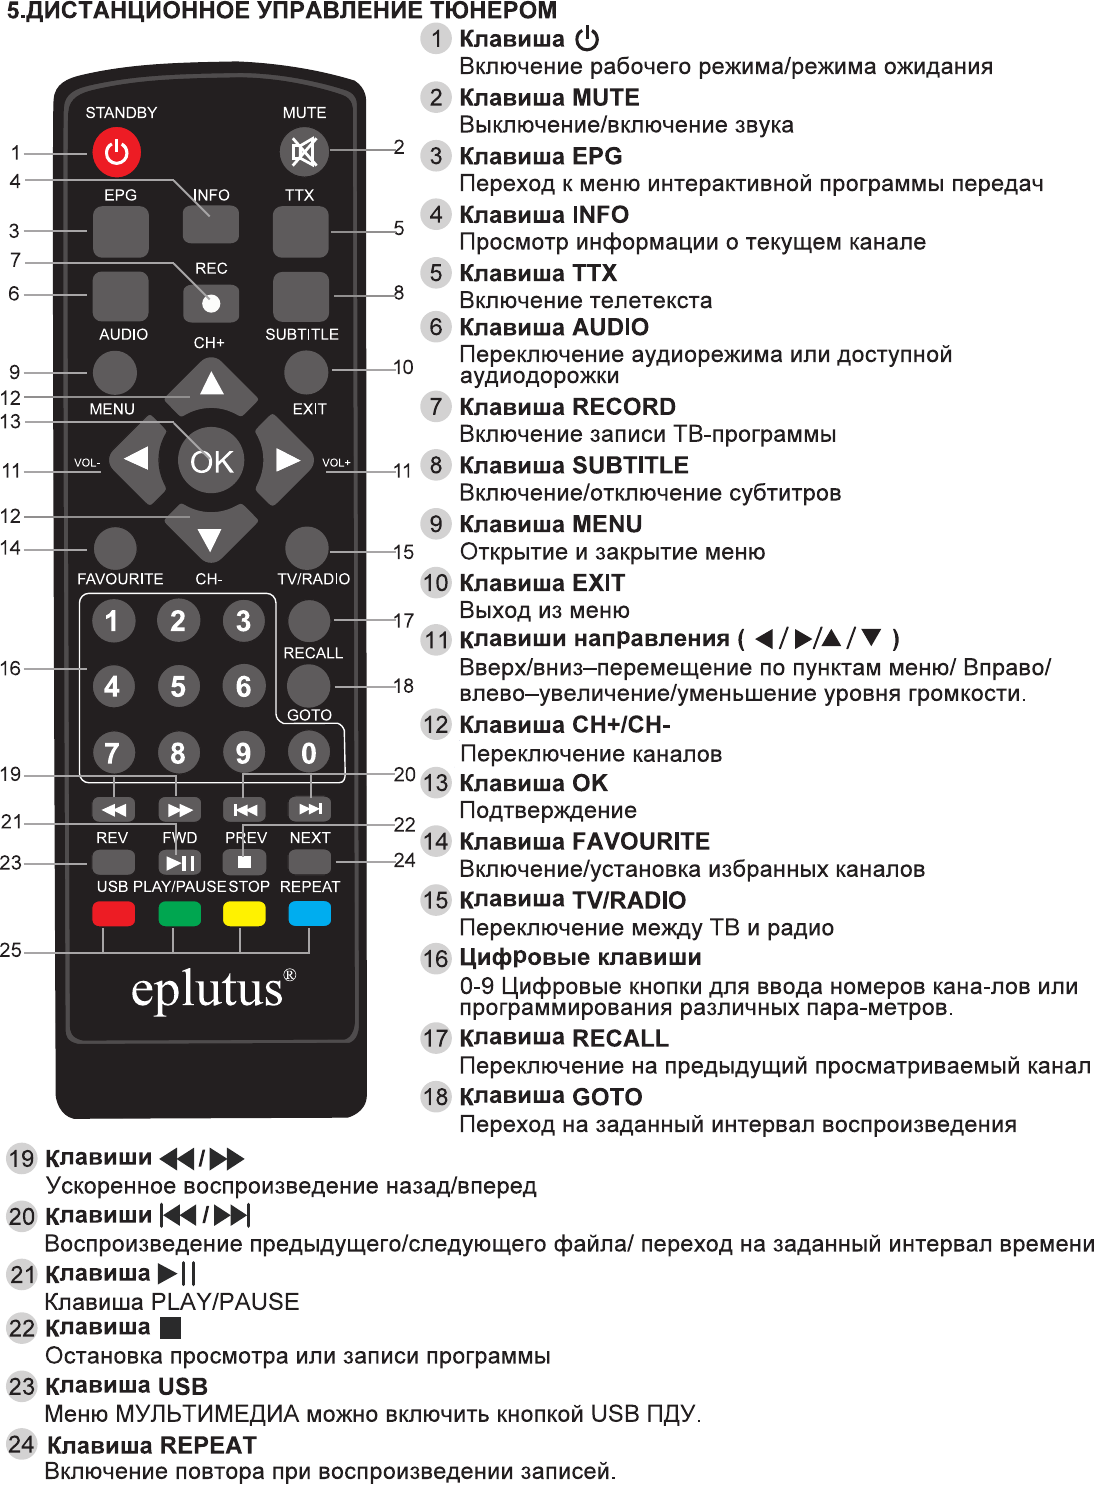 ТВ-приставка Eplutus DVB T2-C 165T